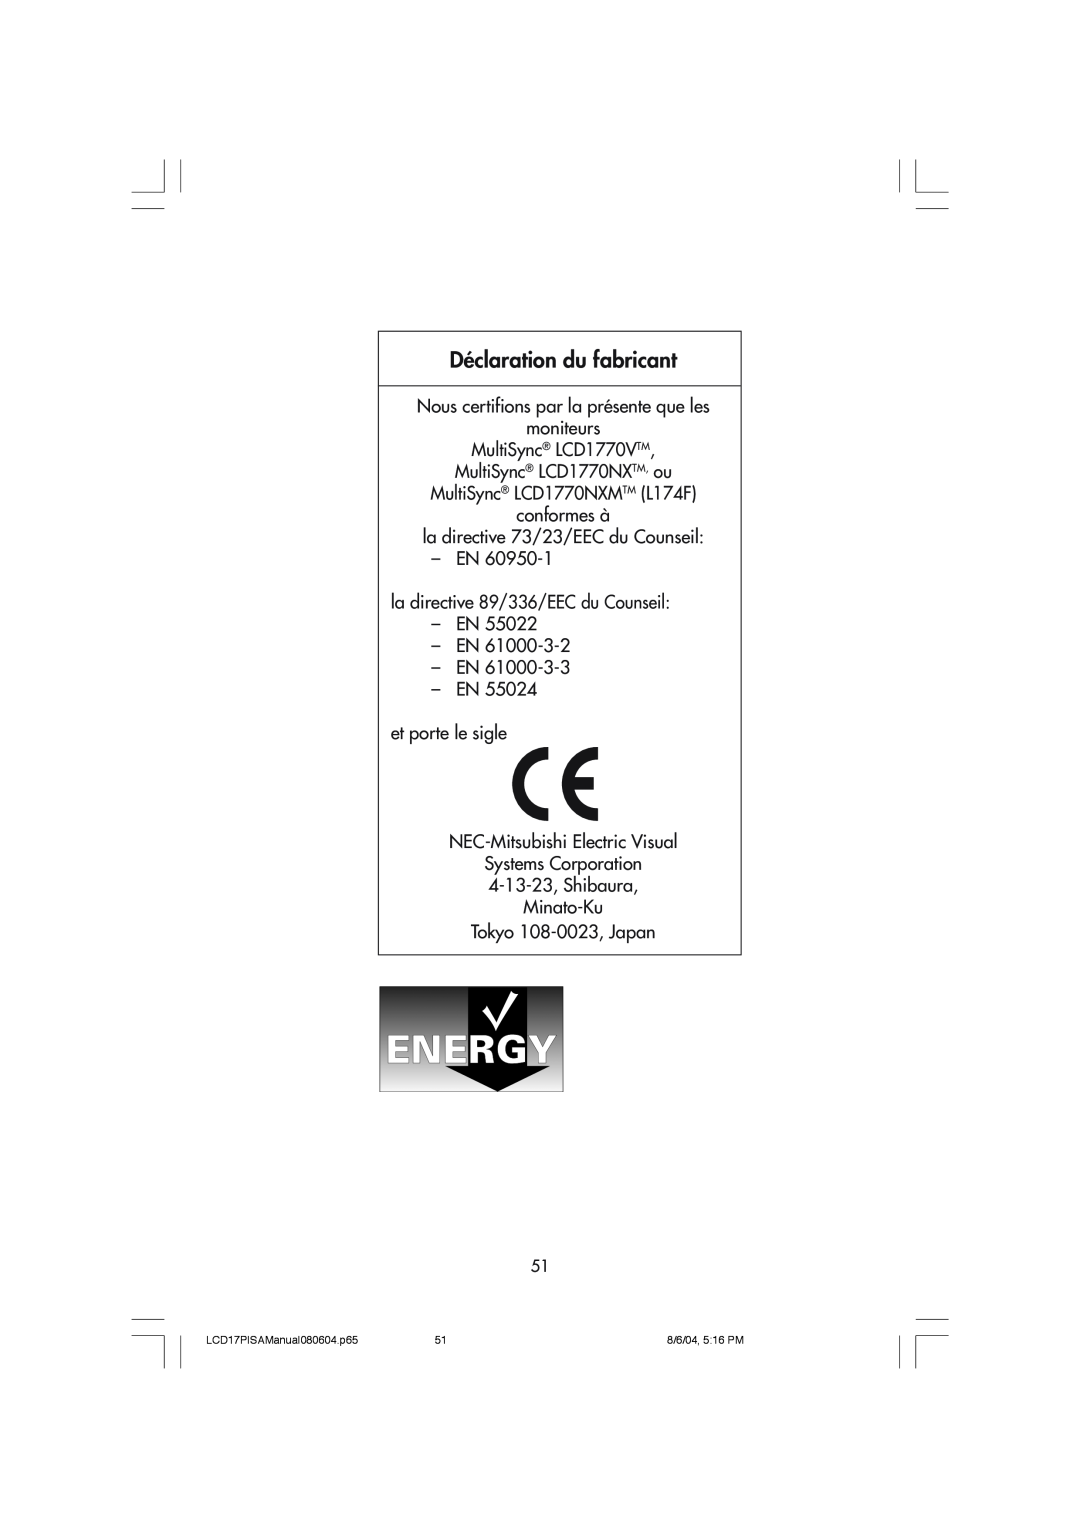 NEC LCD1770V, LCD1770NX, LCD1770NXM user manual DŽclaration du fabricant 